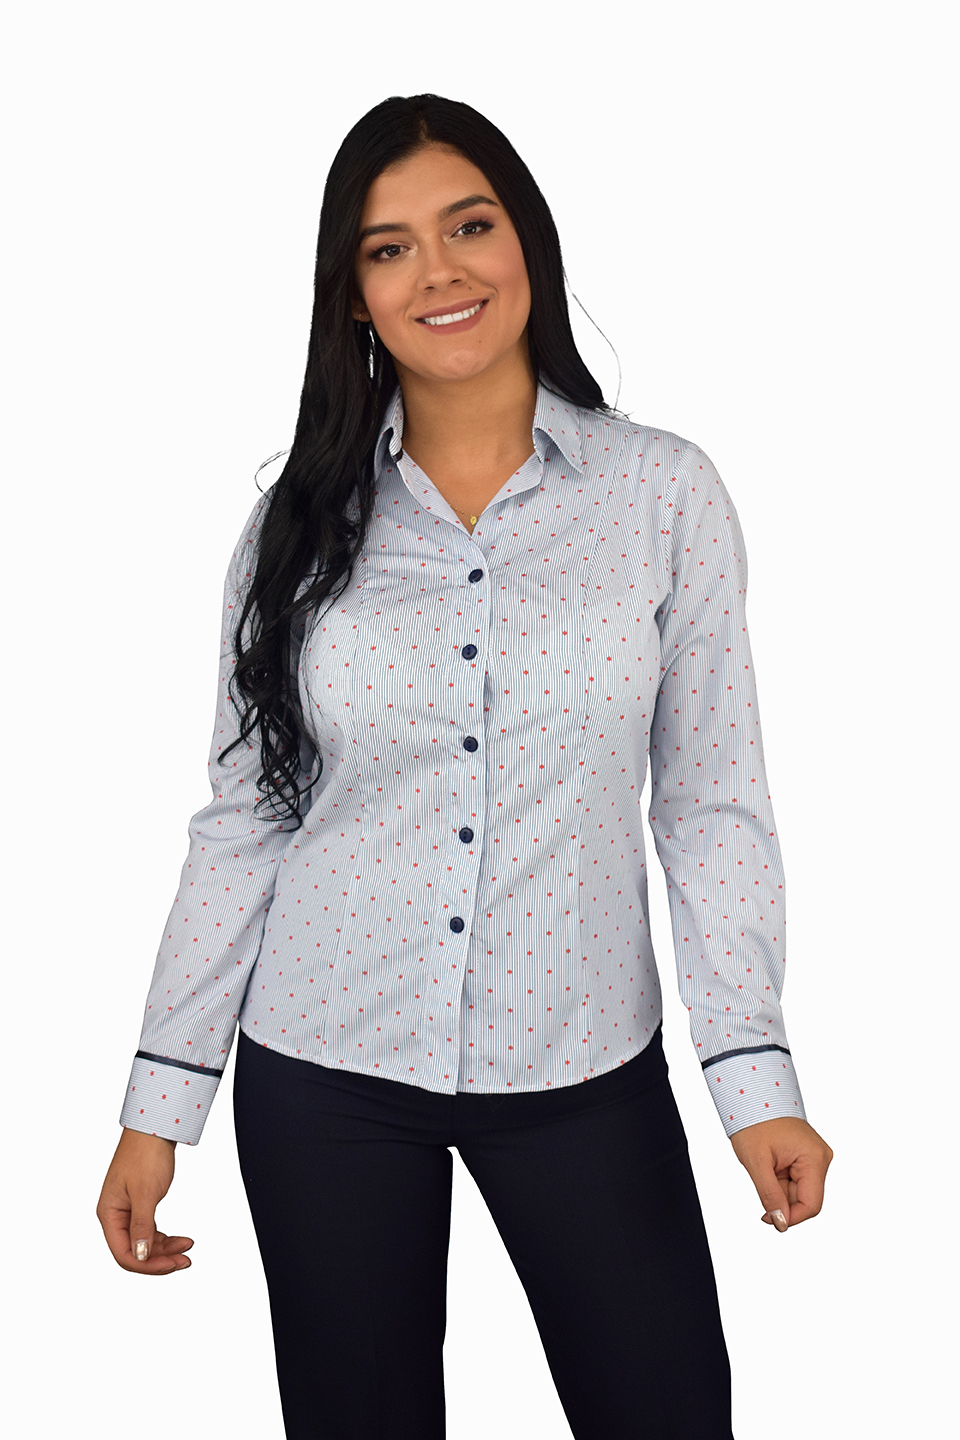 uniforme empresarial blusas ref: mayo  Celmy diseño y fabricación de  uniformes empresariales y uniformes ejecutivos